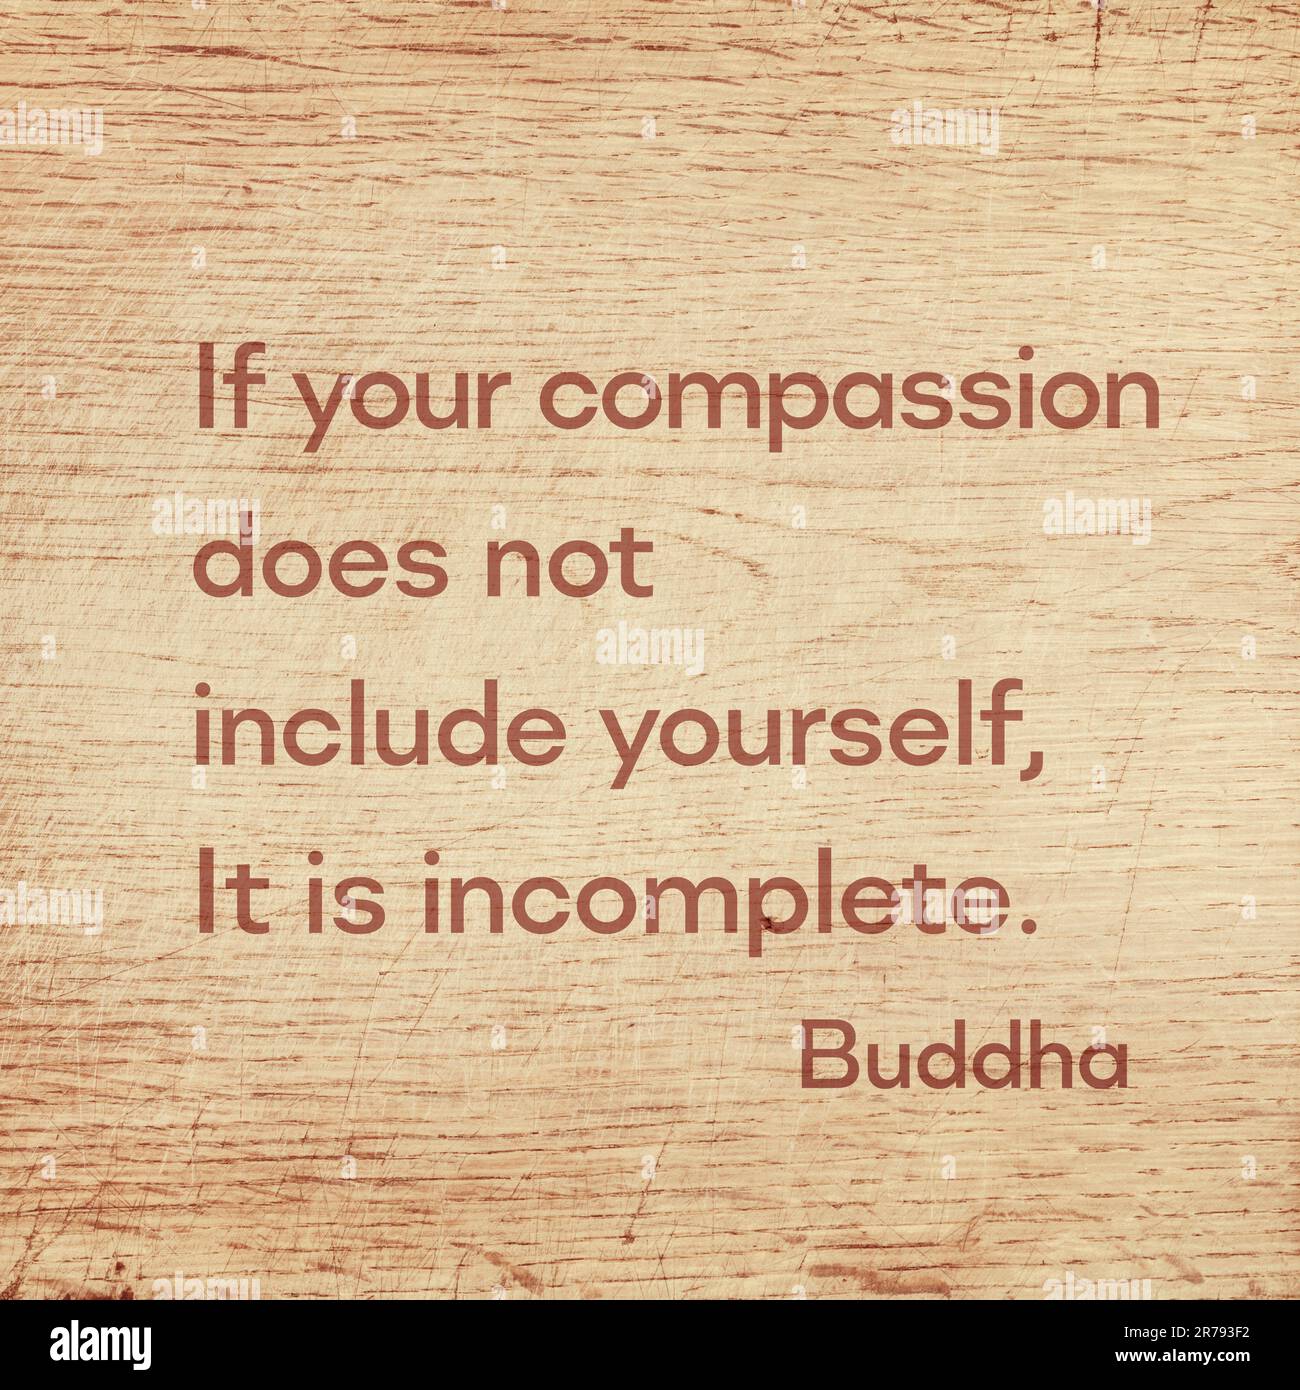 Se la vostra compassione non include voi stessi, è incompleta - famosa citazione del Buddha di Gautama stampata su una tavola di legno grunge Foto Stock